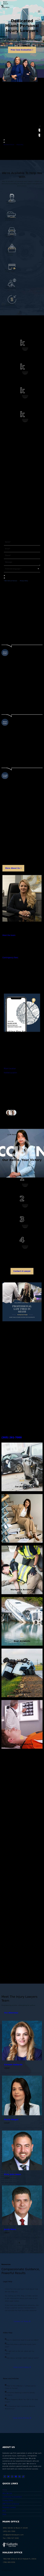 Gallardo Law Firm - Miami FL Lawyers